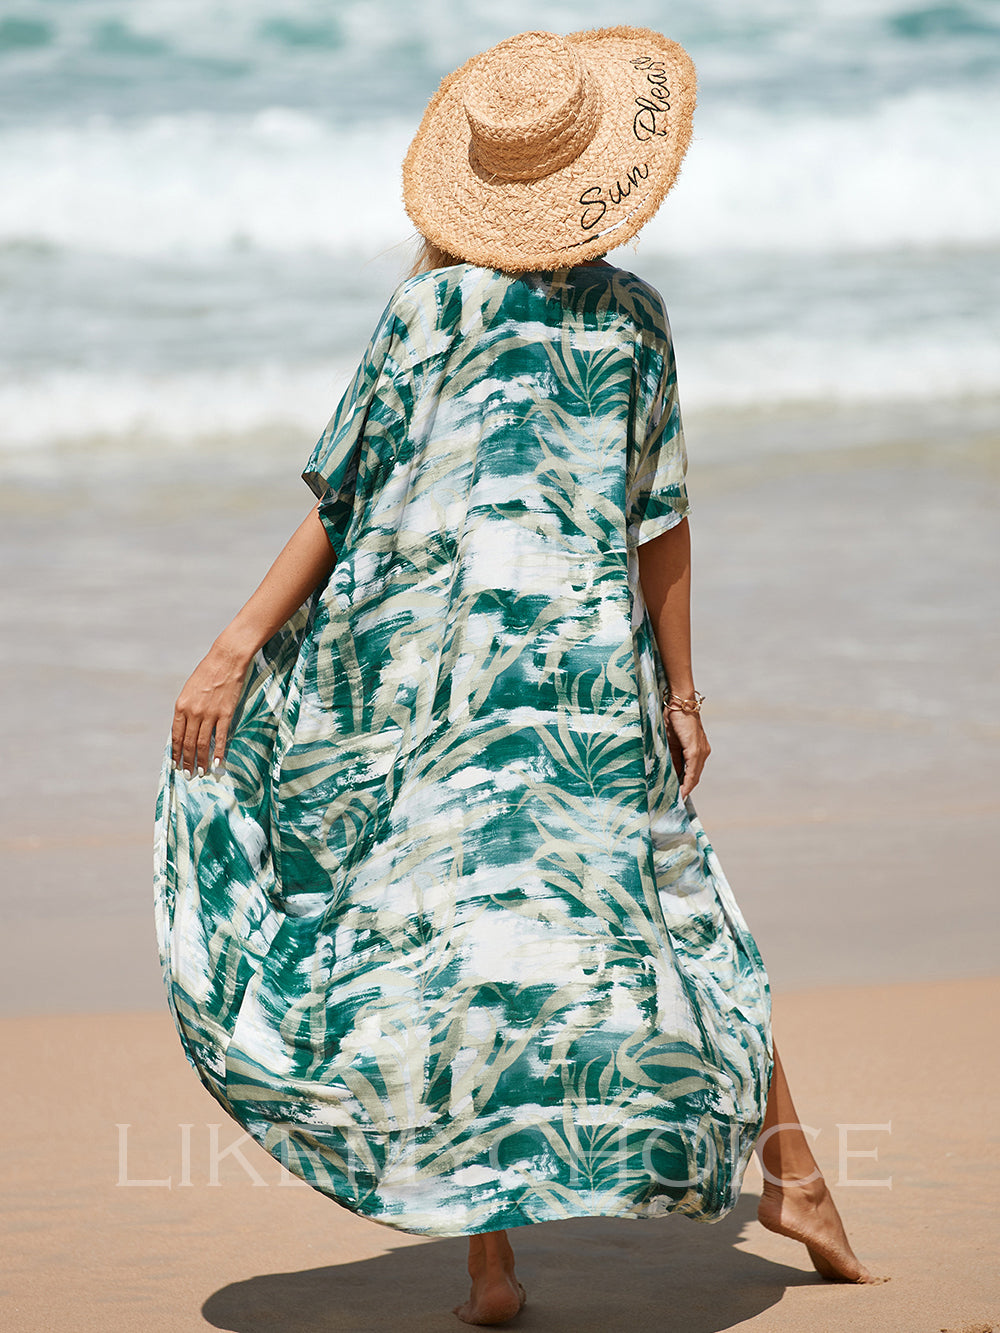 فساتين الشاطئ النسائية ذات الطباعة المرجانية المفتوحة من الأمام